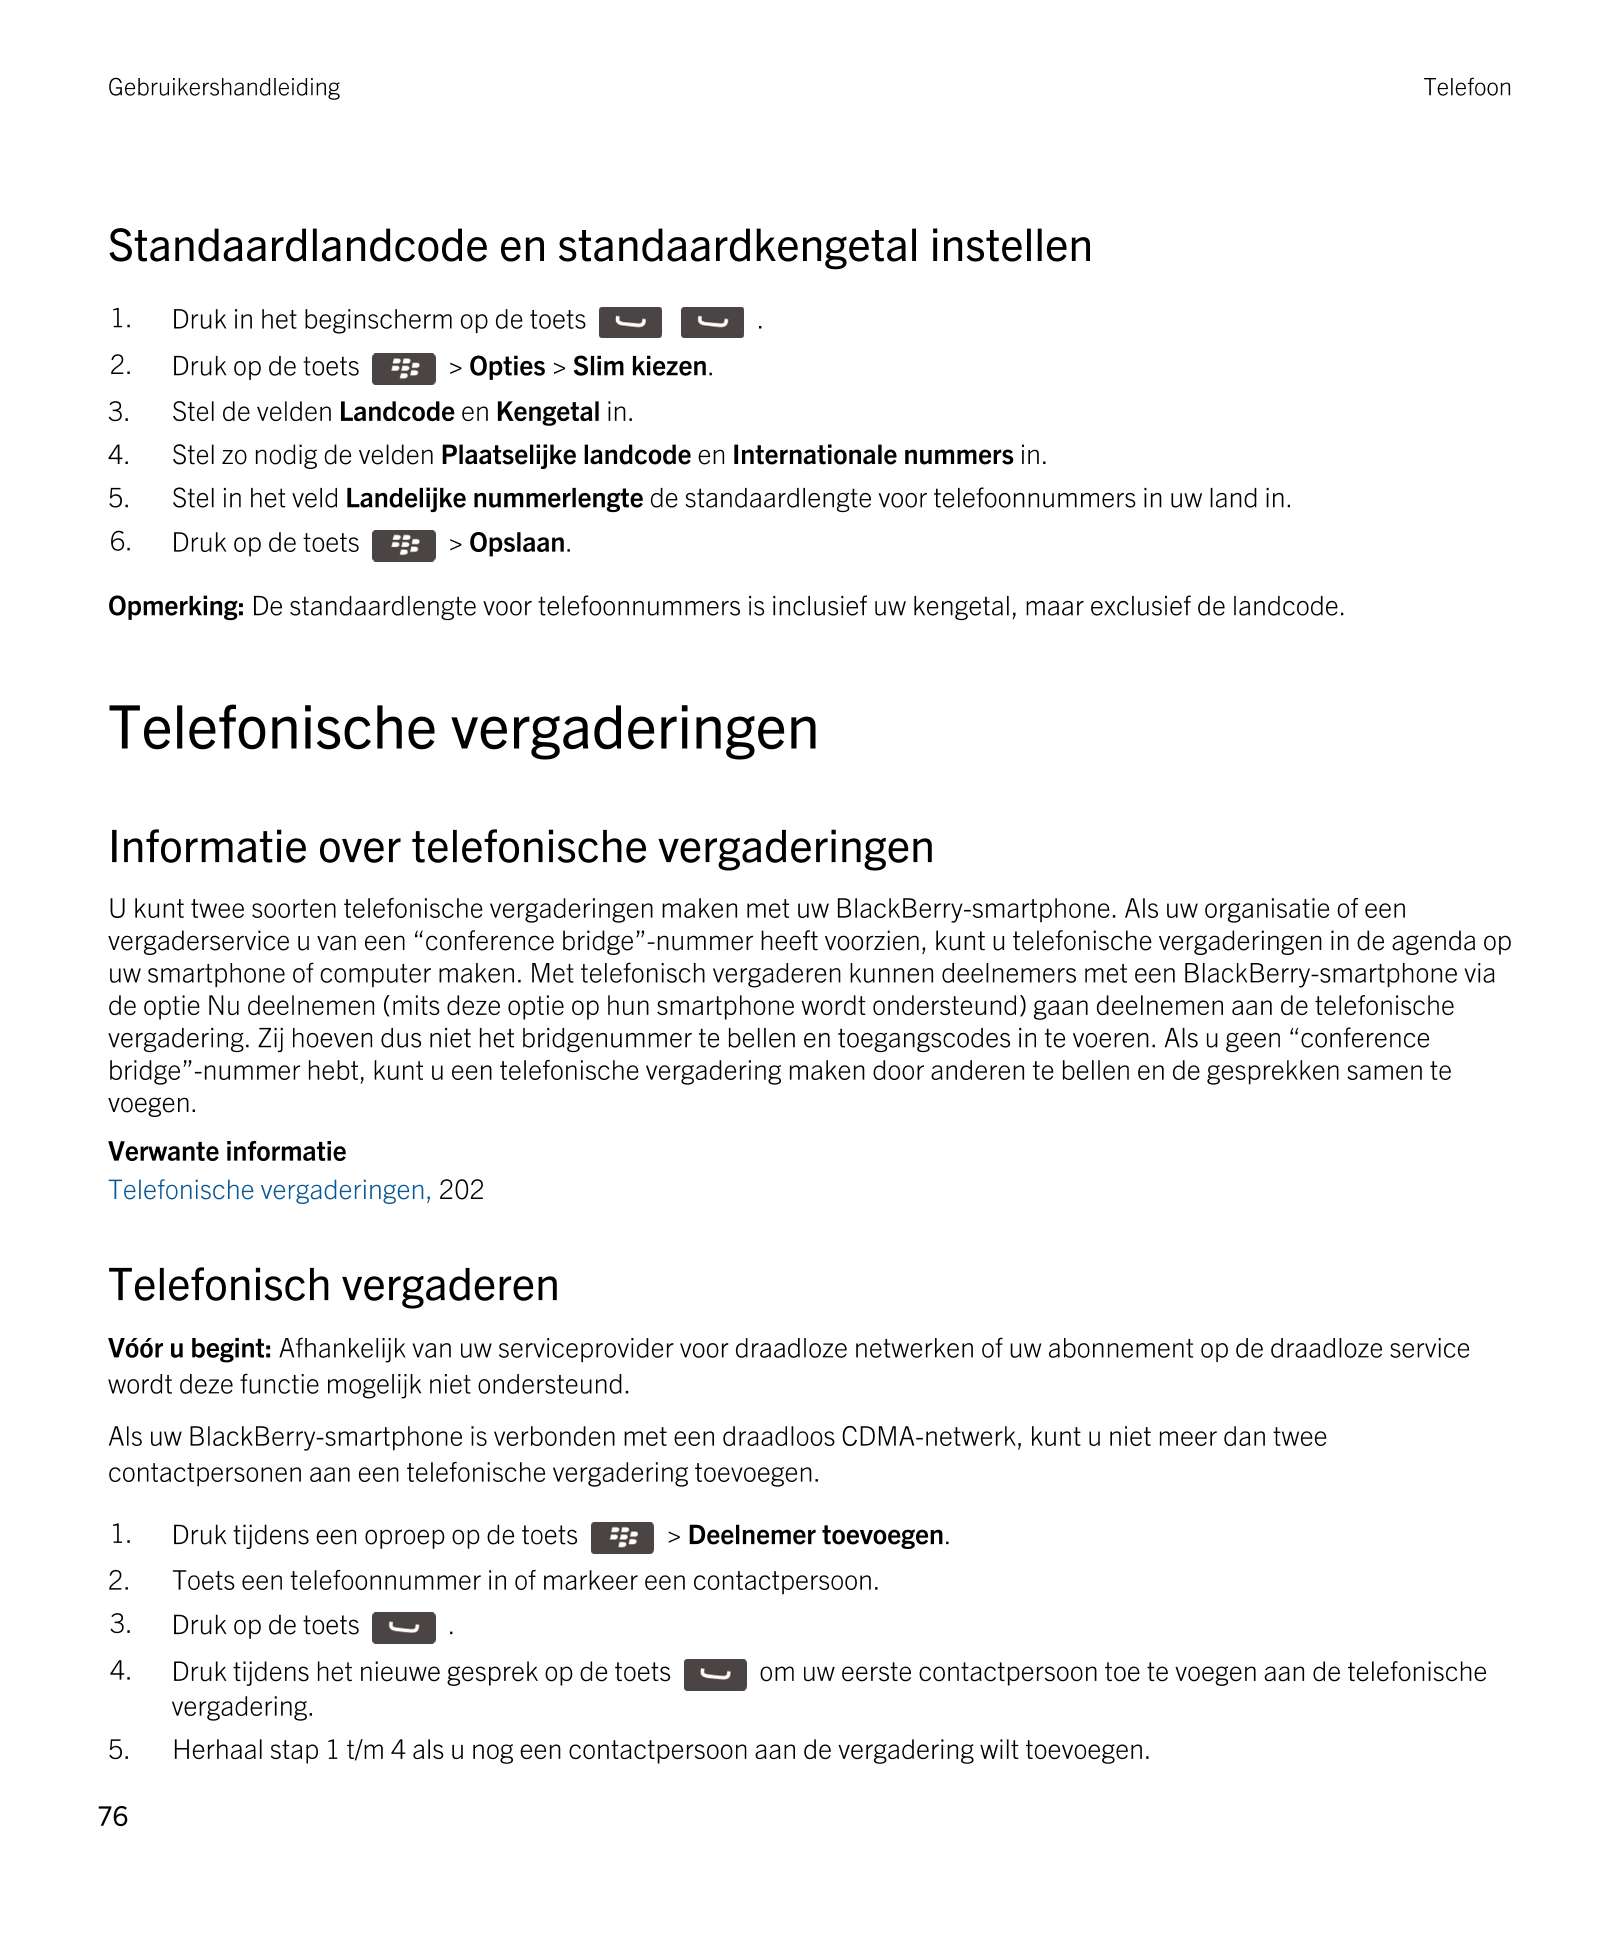 Gebruikershandleiding Telefoon
Standaardlandcode en standaardkengetal instellen
1. Druk in het beginscherm op de toets      . 
2